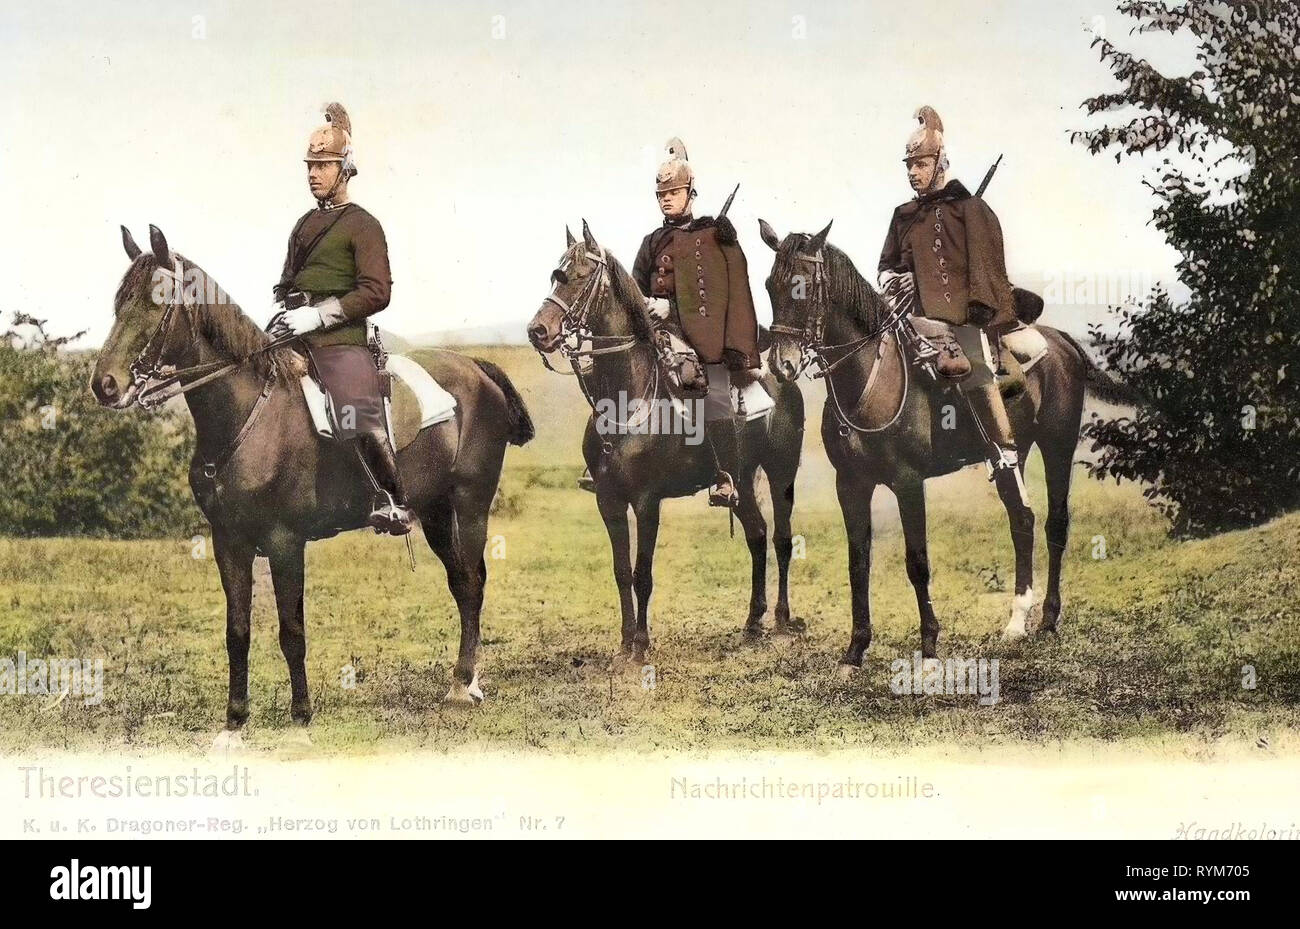 Die Patrouillen, die militärische Nutzung von Pferden, österreichisch-ungarischen Armee, K. u. K. Dragoner-Regiment Herzog von Lothringen Nr. 7, 1903, Aussig, Theresienstadt, Nachichtenpatrouille, Tschechische Republik Stockfoto